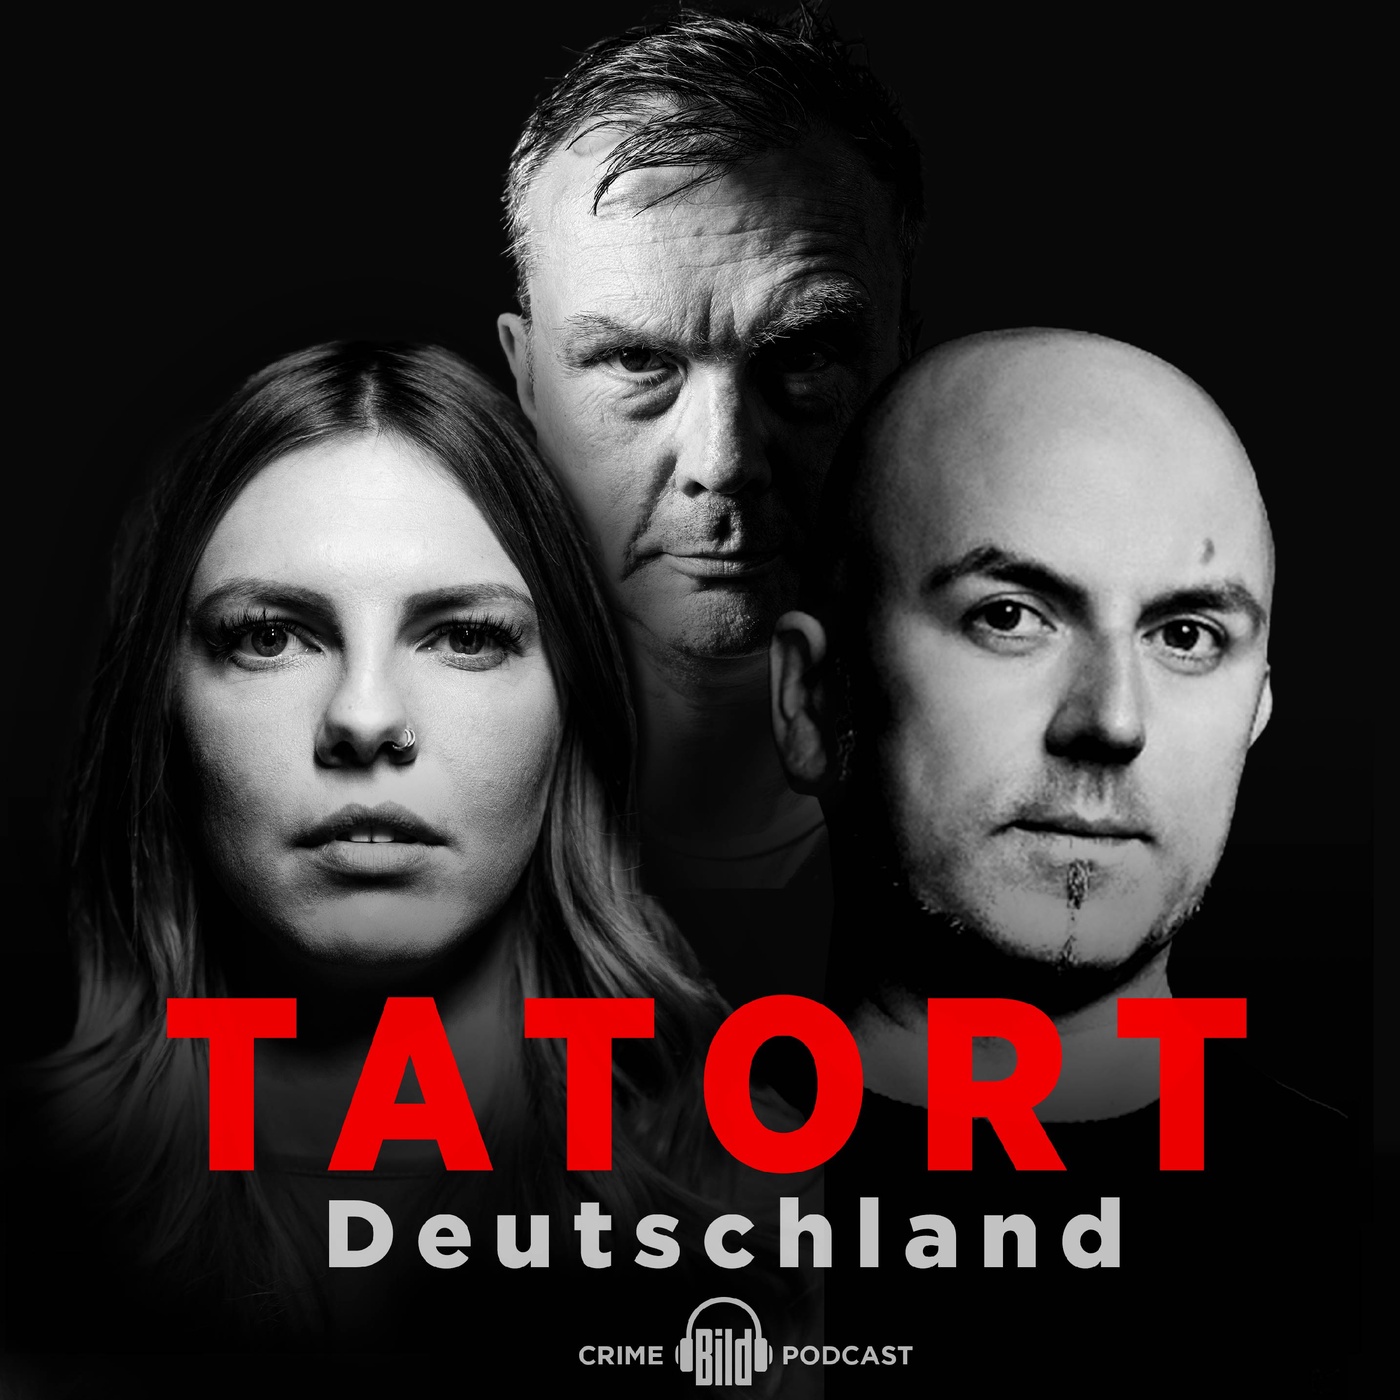 Tatort Deutschland – True Crime